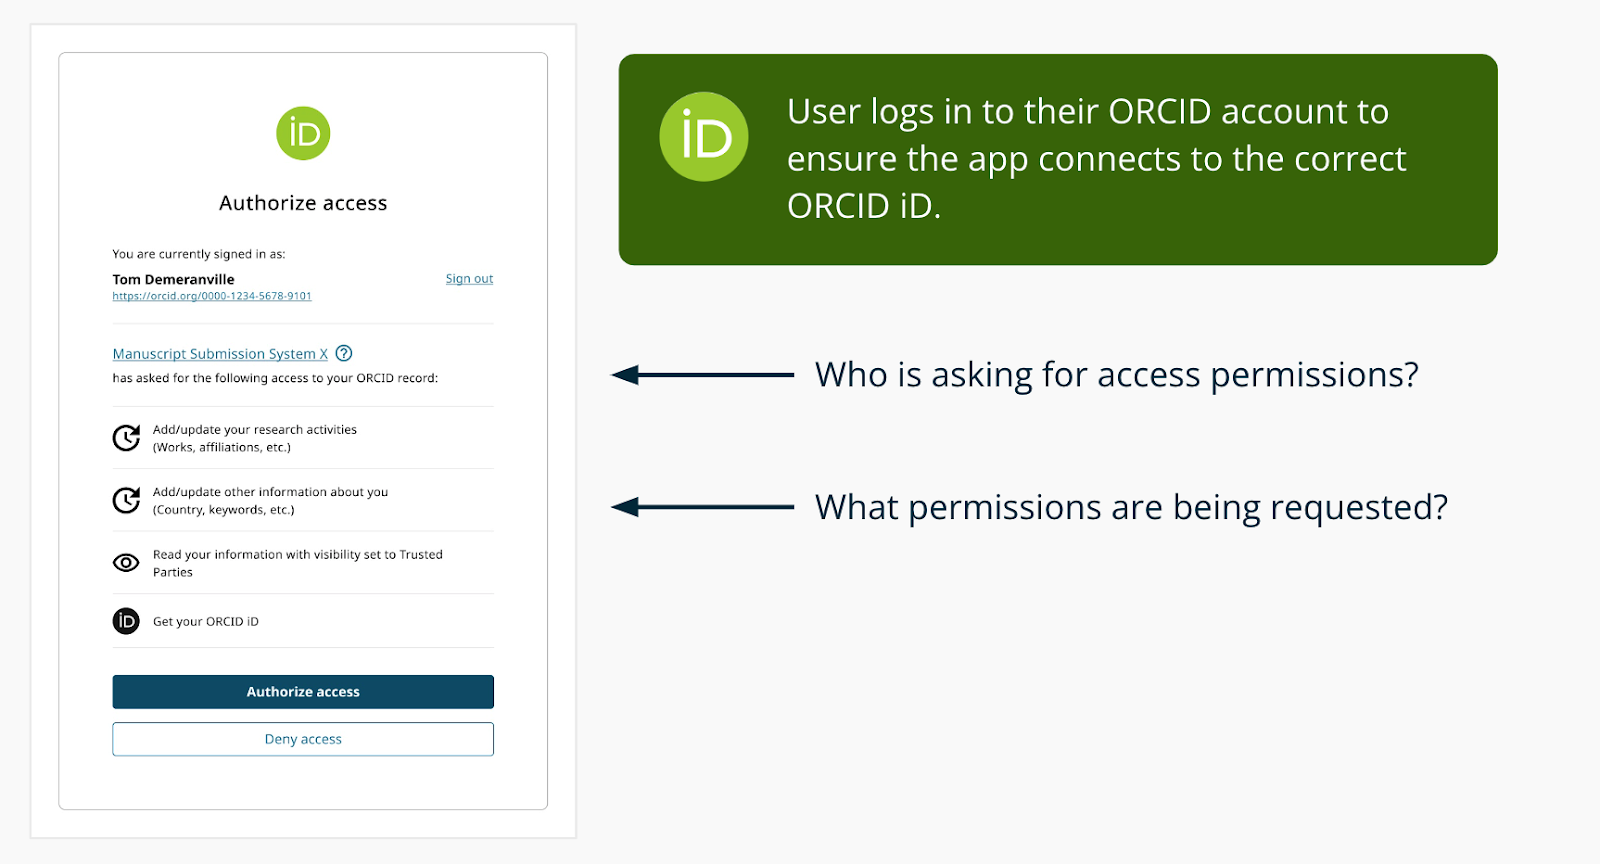 عرض الصورة ORCID OAuth يأذن الشاشة مع من يطلب الإذن وما هي الأذونات التي يطلبونها